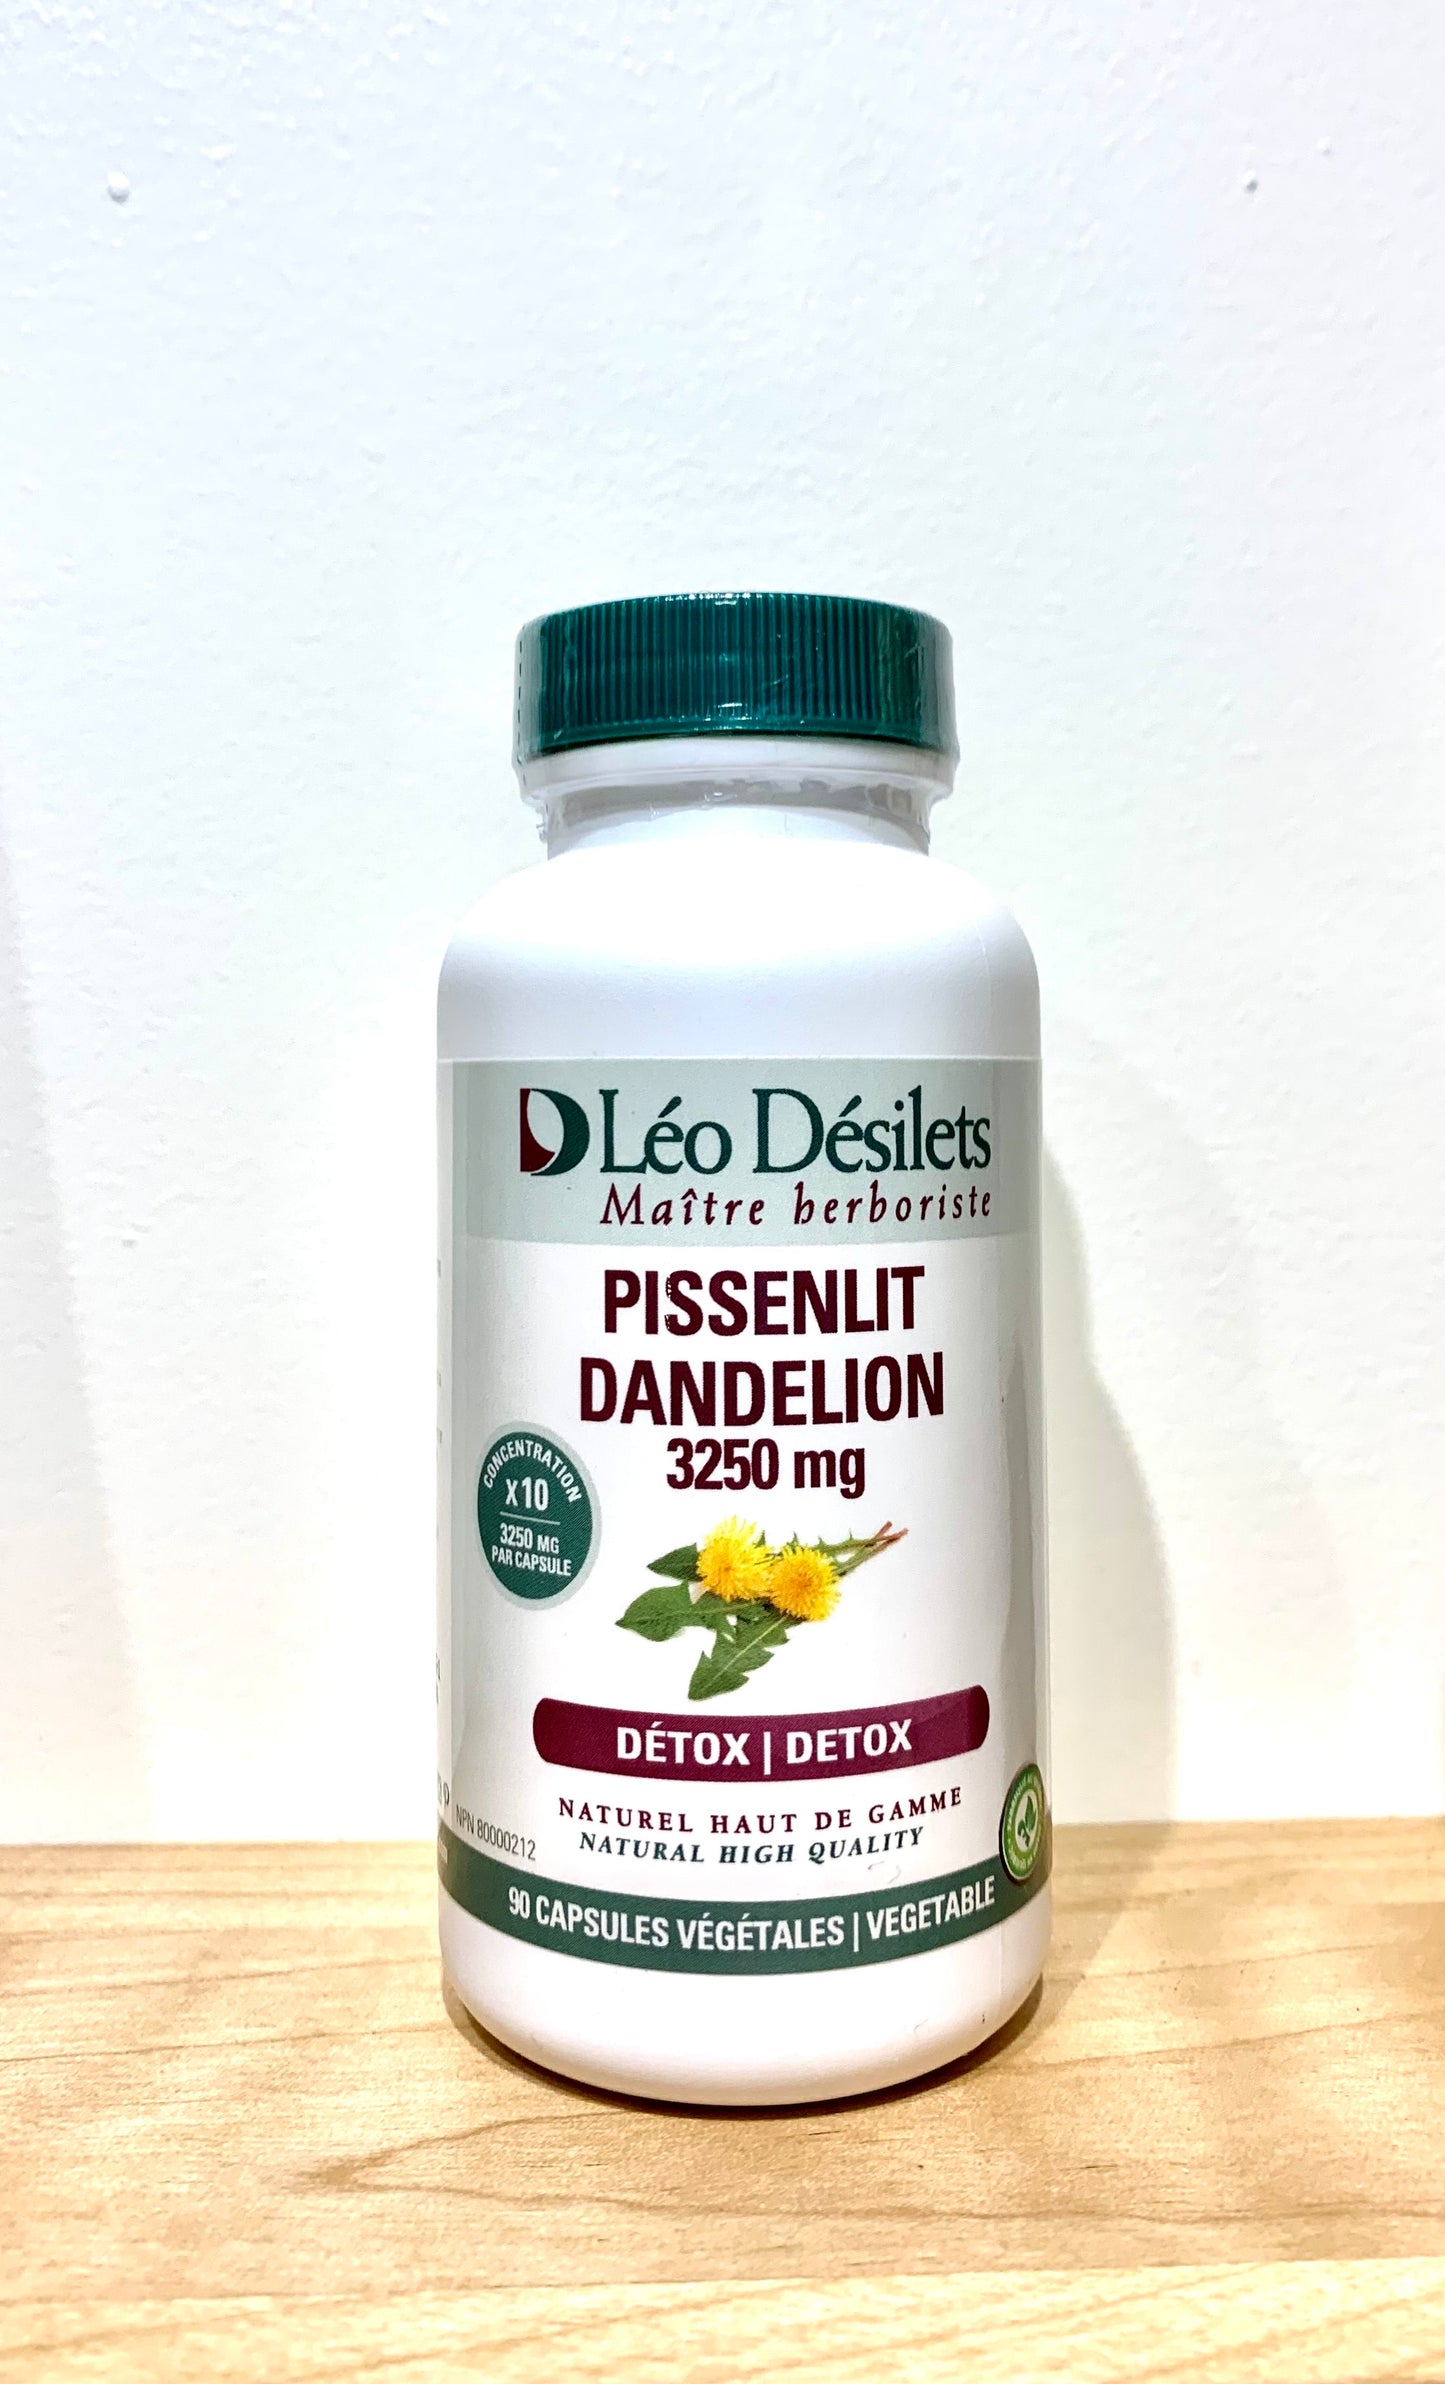 Dandelion capsules